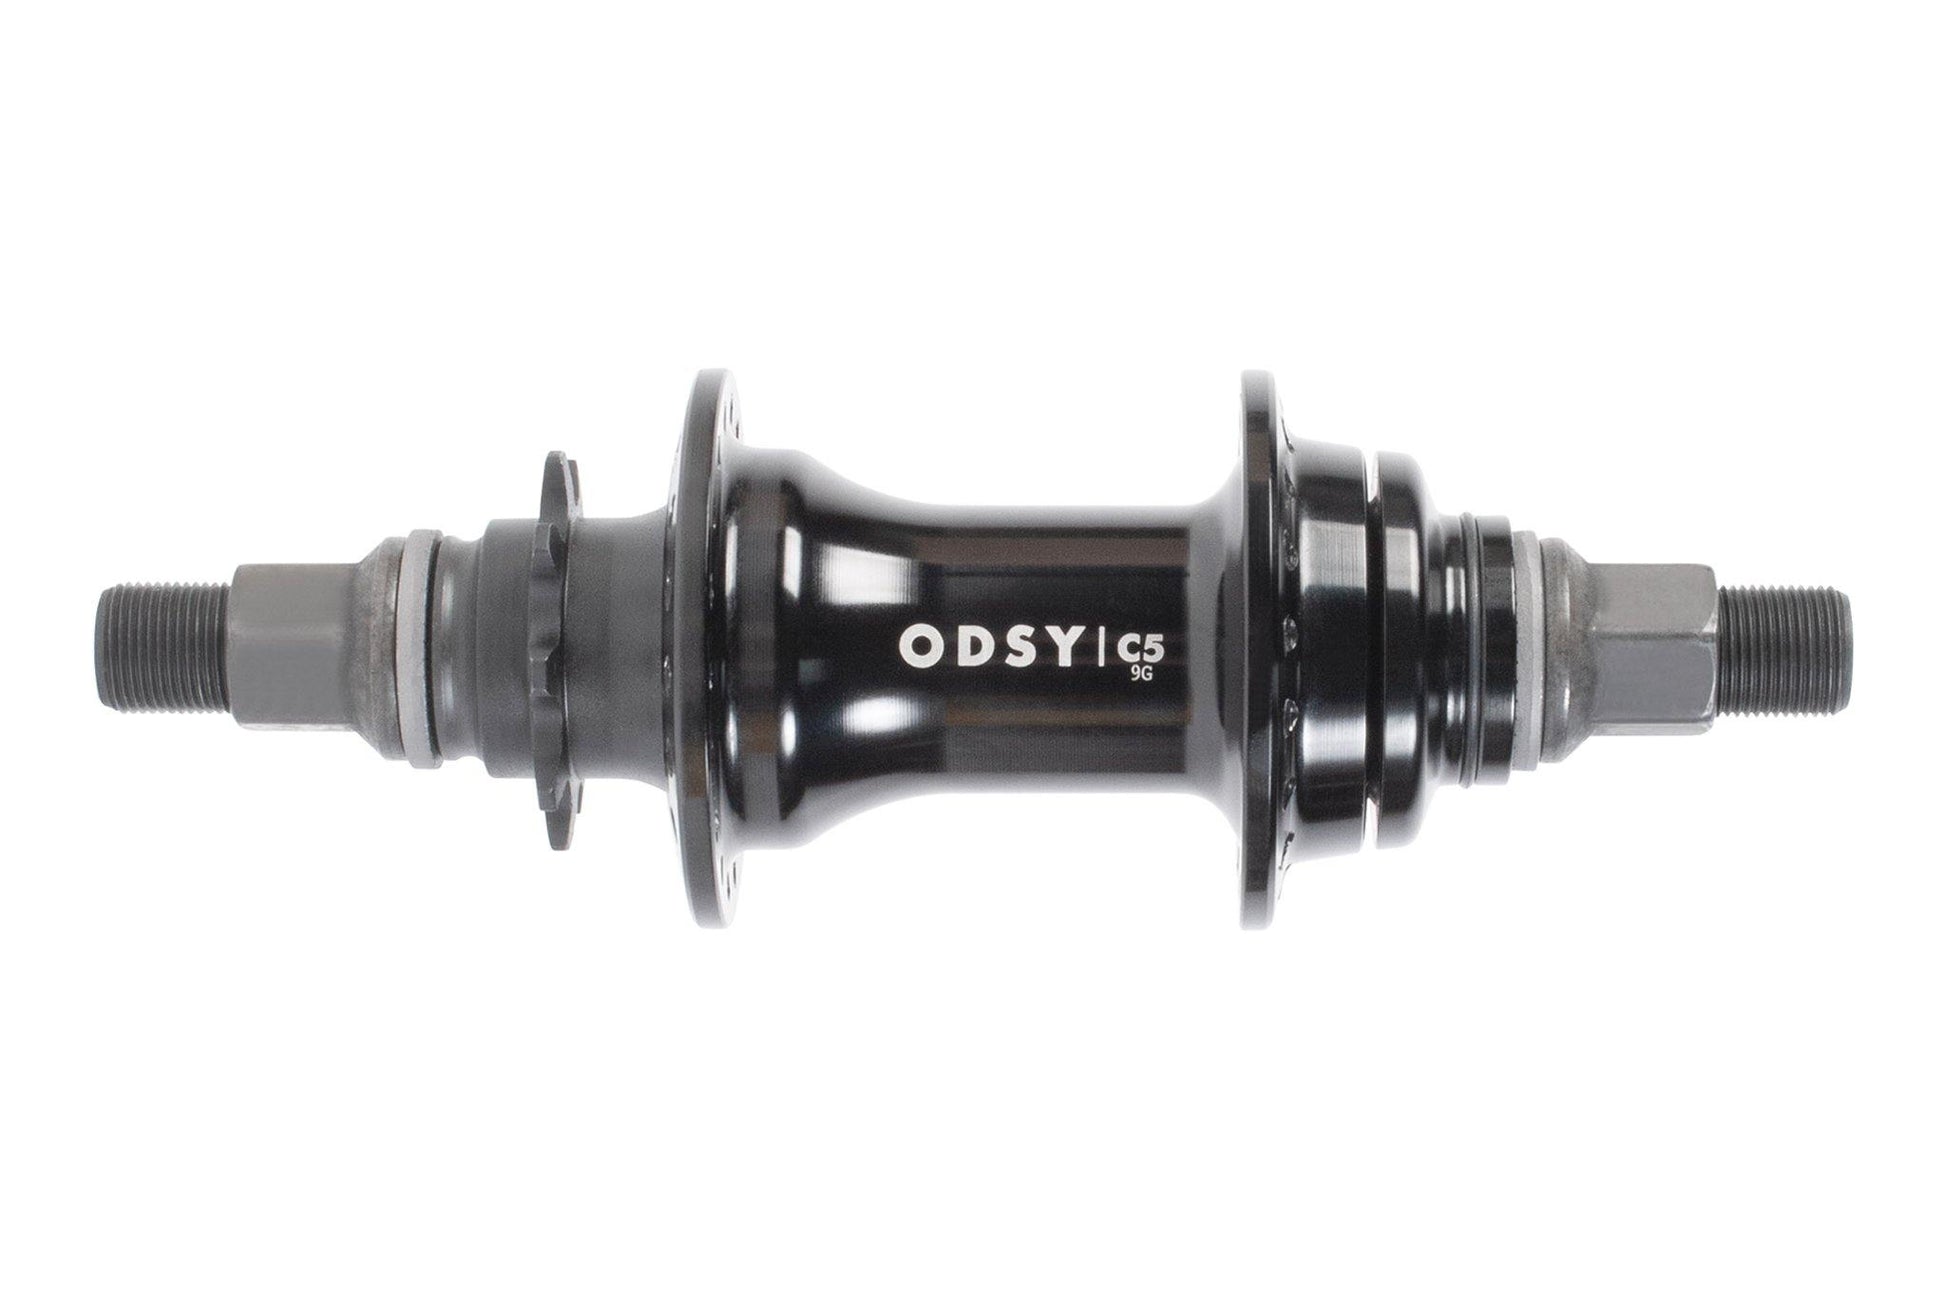 Odyssey C5 cassette (RHD/LHD) - Powers Bike Shop